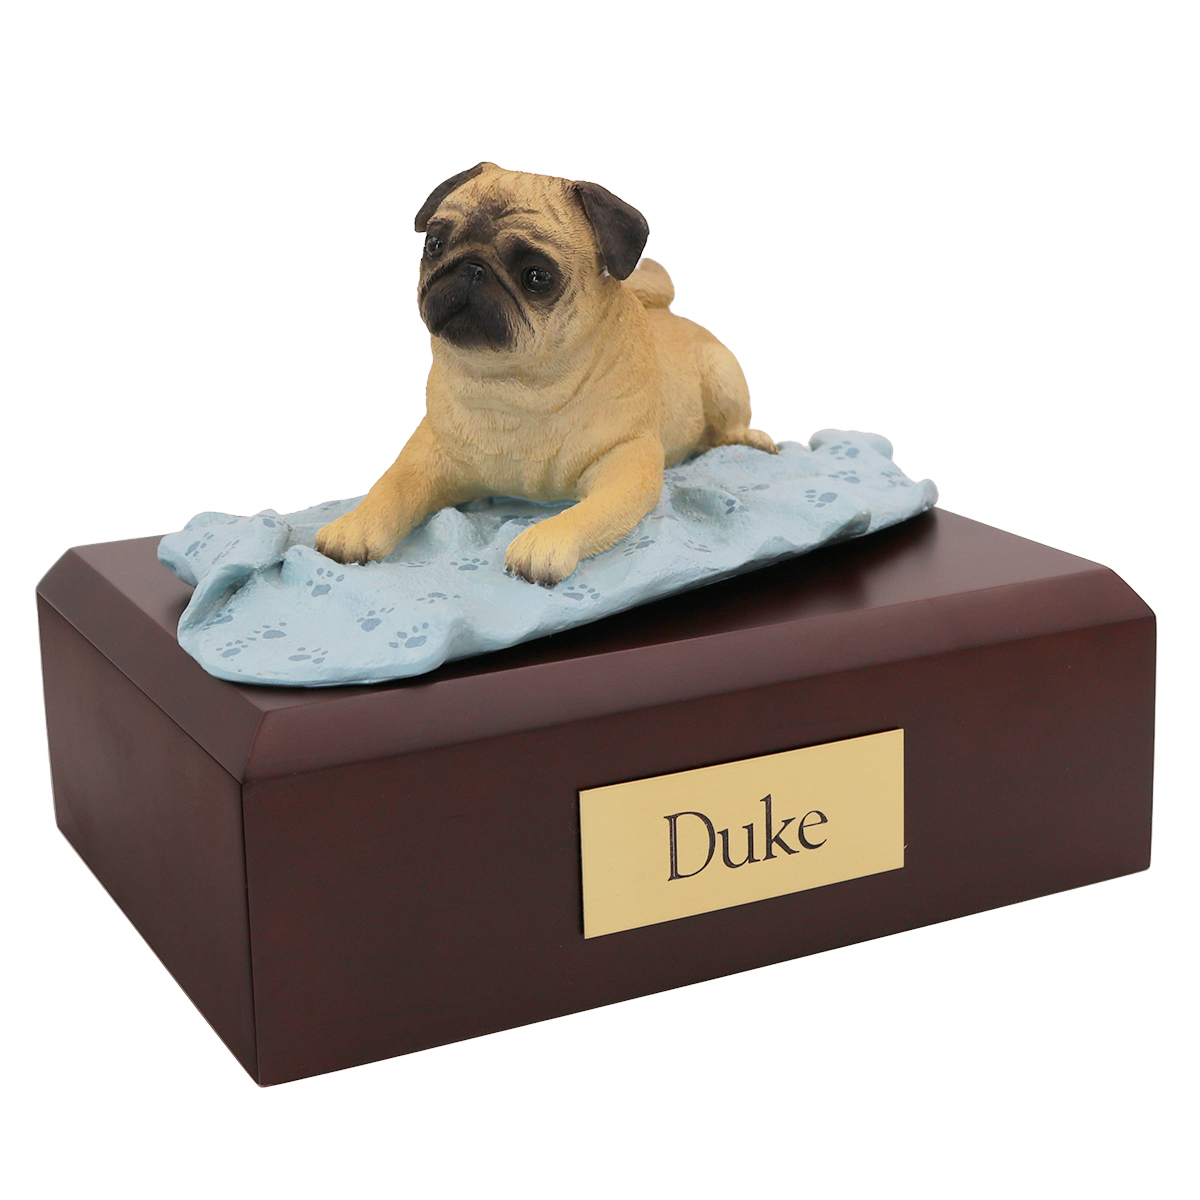 Dog, Pug, Fawn - Figurine Urn